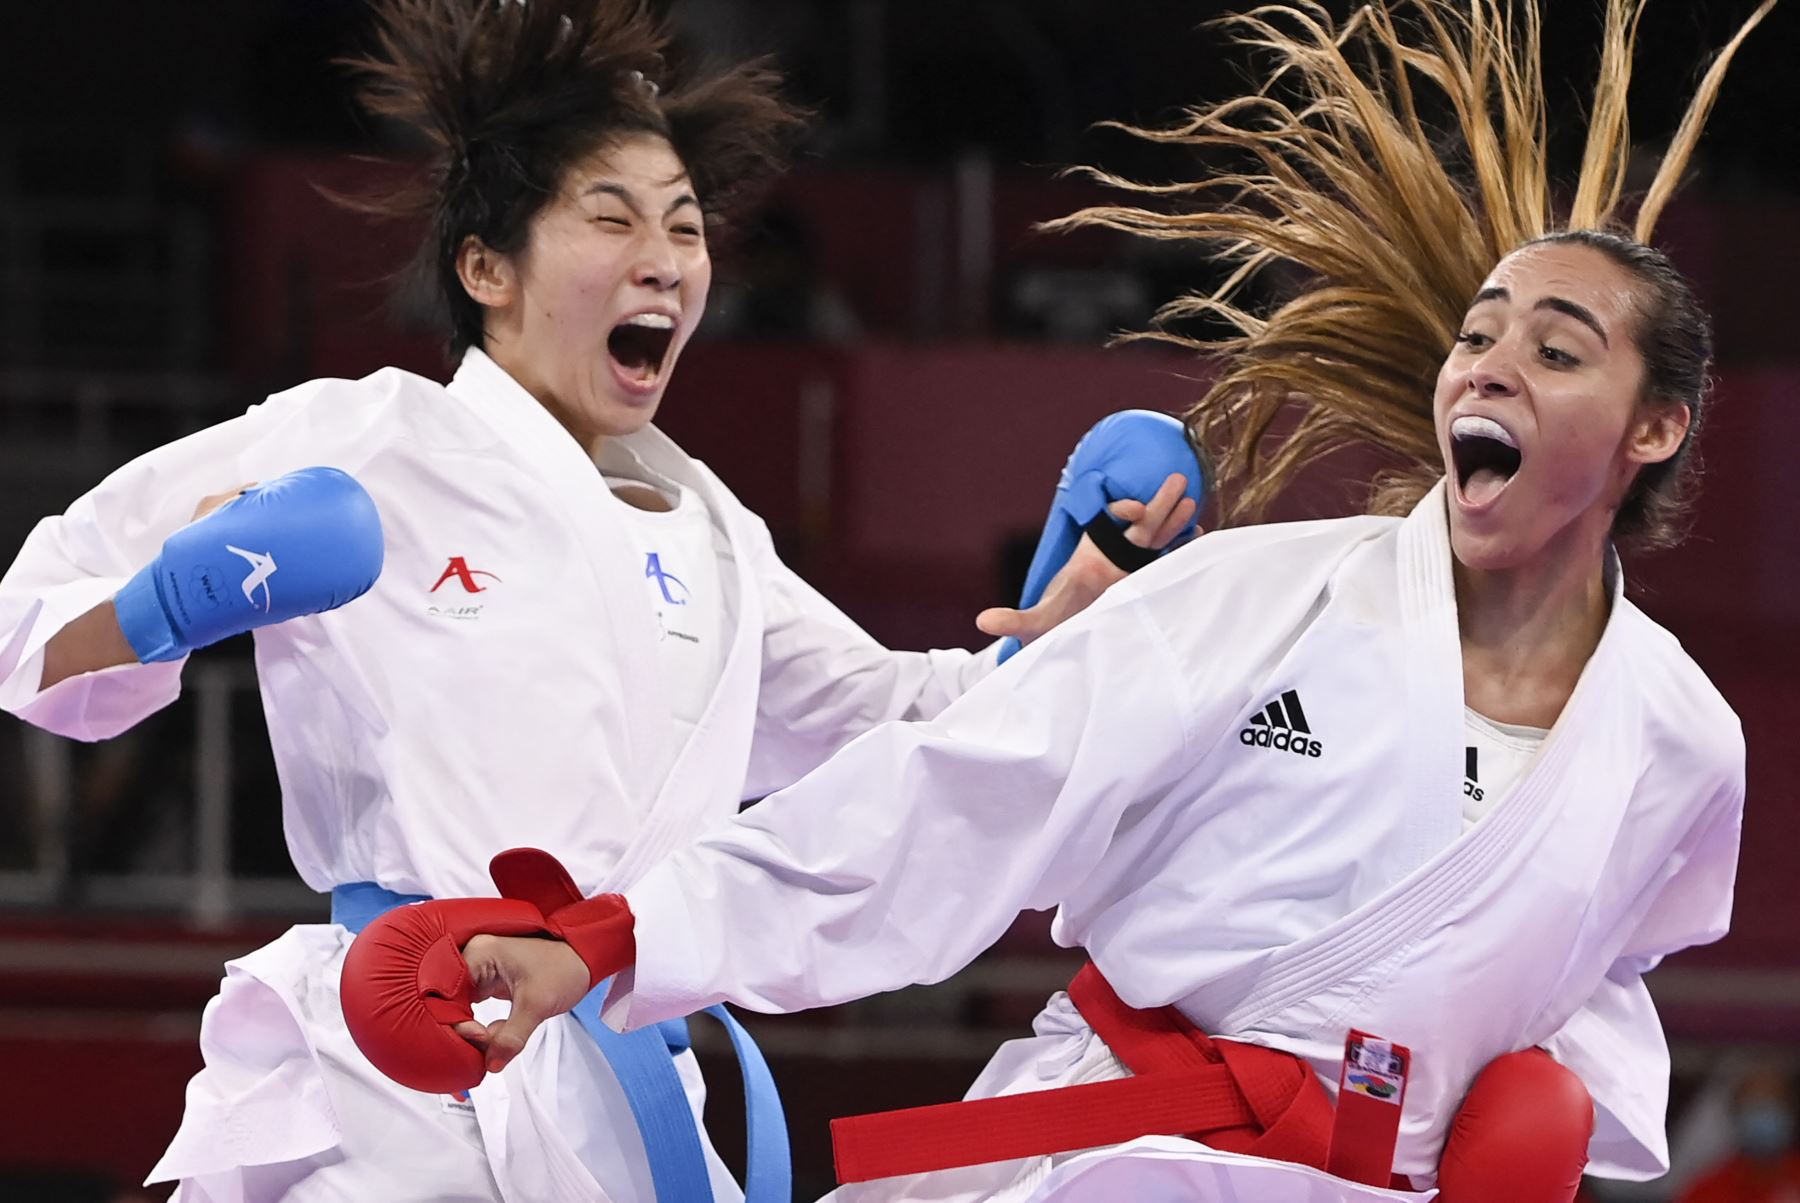 La japonesa Mayumi Someya compite contra la venezolana Claudymar Garces Sequera en la ronda eliminatoria de kumite femenino -61 kg de kárate durante los Juegos Olímpicos de Tokio 2020, en el Nippon Budokan. Foto: AFP